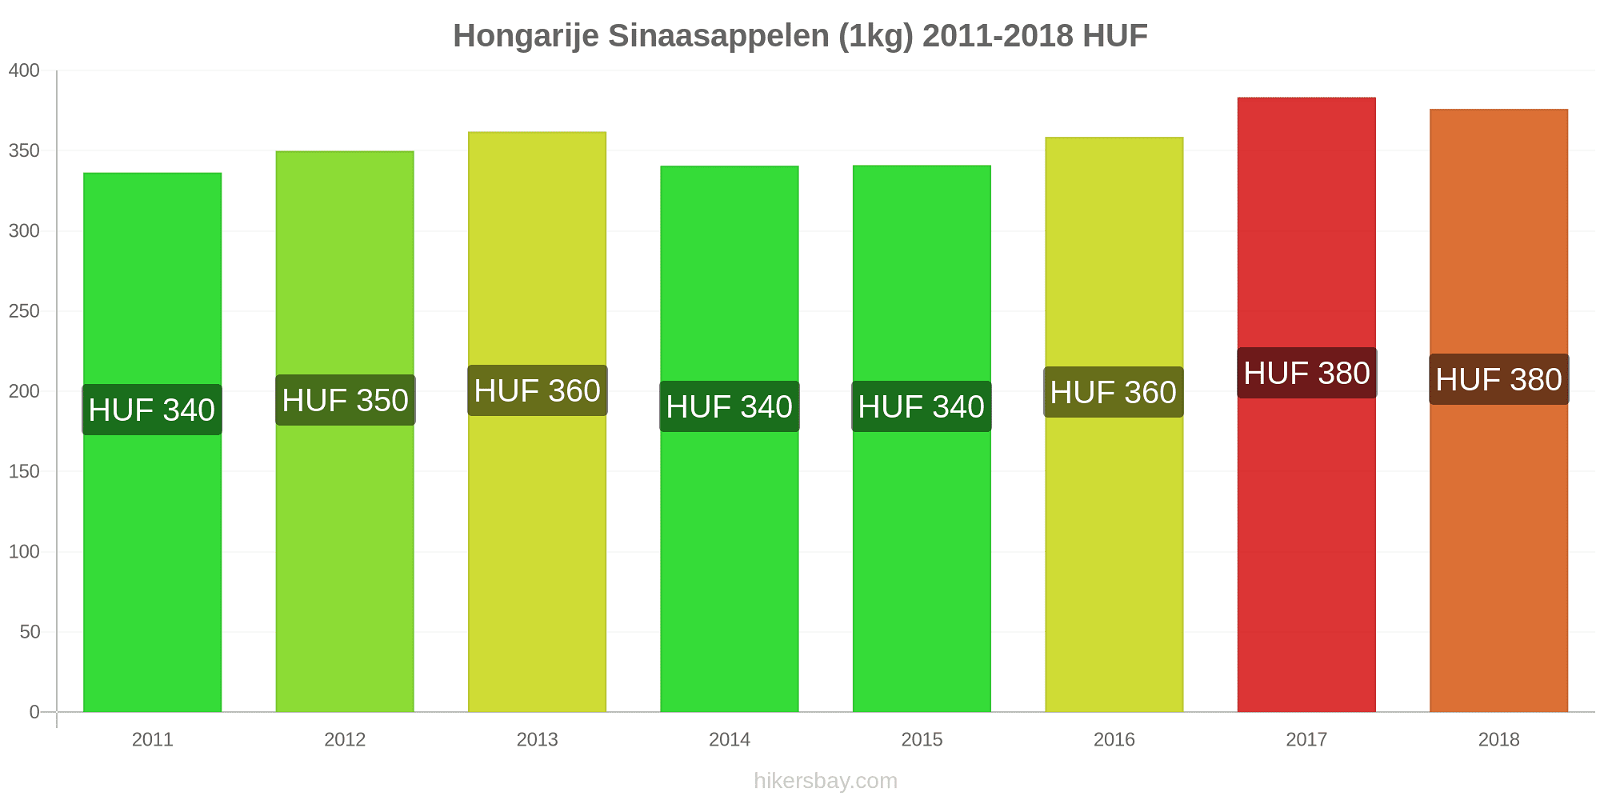 Hongarije prijswijzigingen Sinaasappels (1kg) hikersbay.com